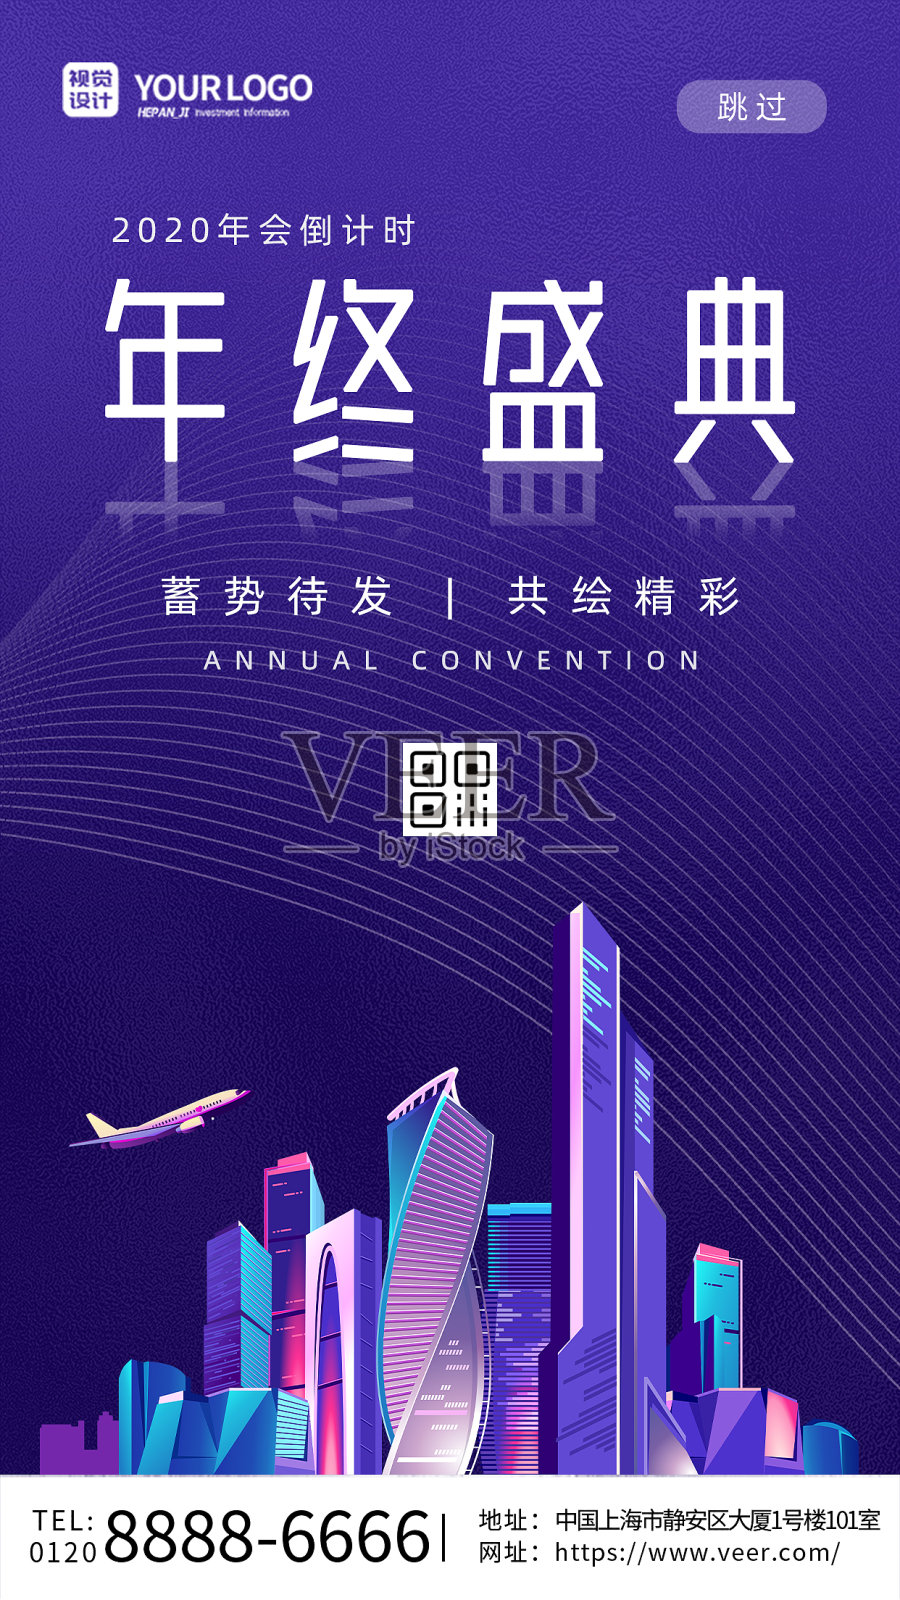 紫色线条大气科技城市年终盛典倒计时手机海报设计模板素材